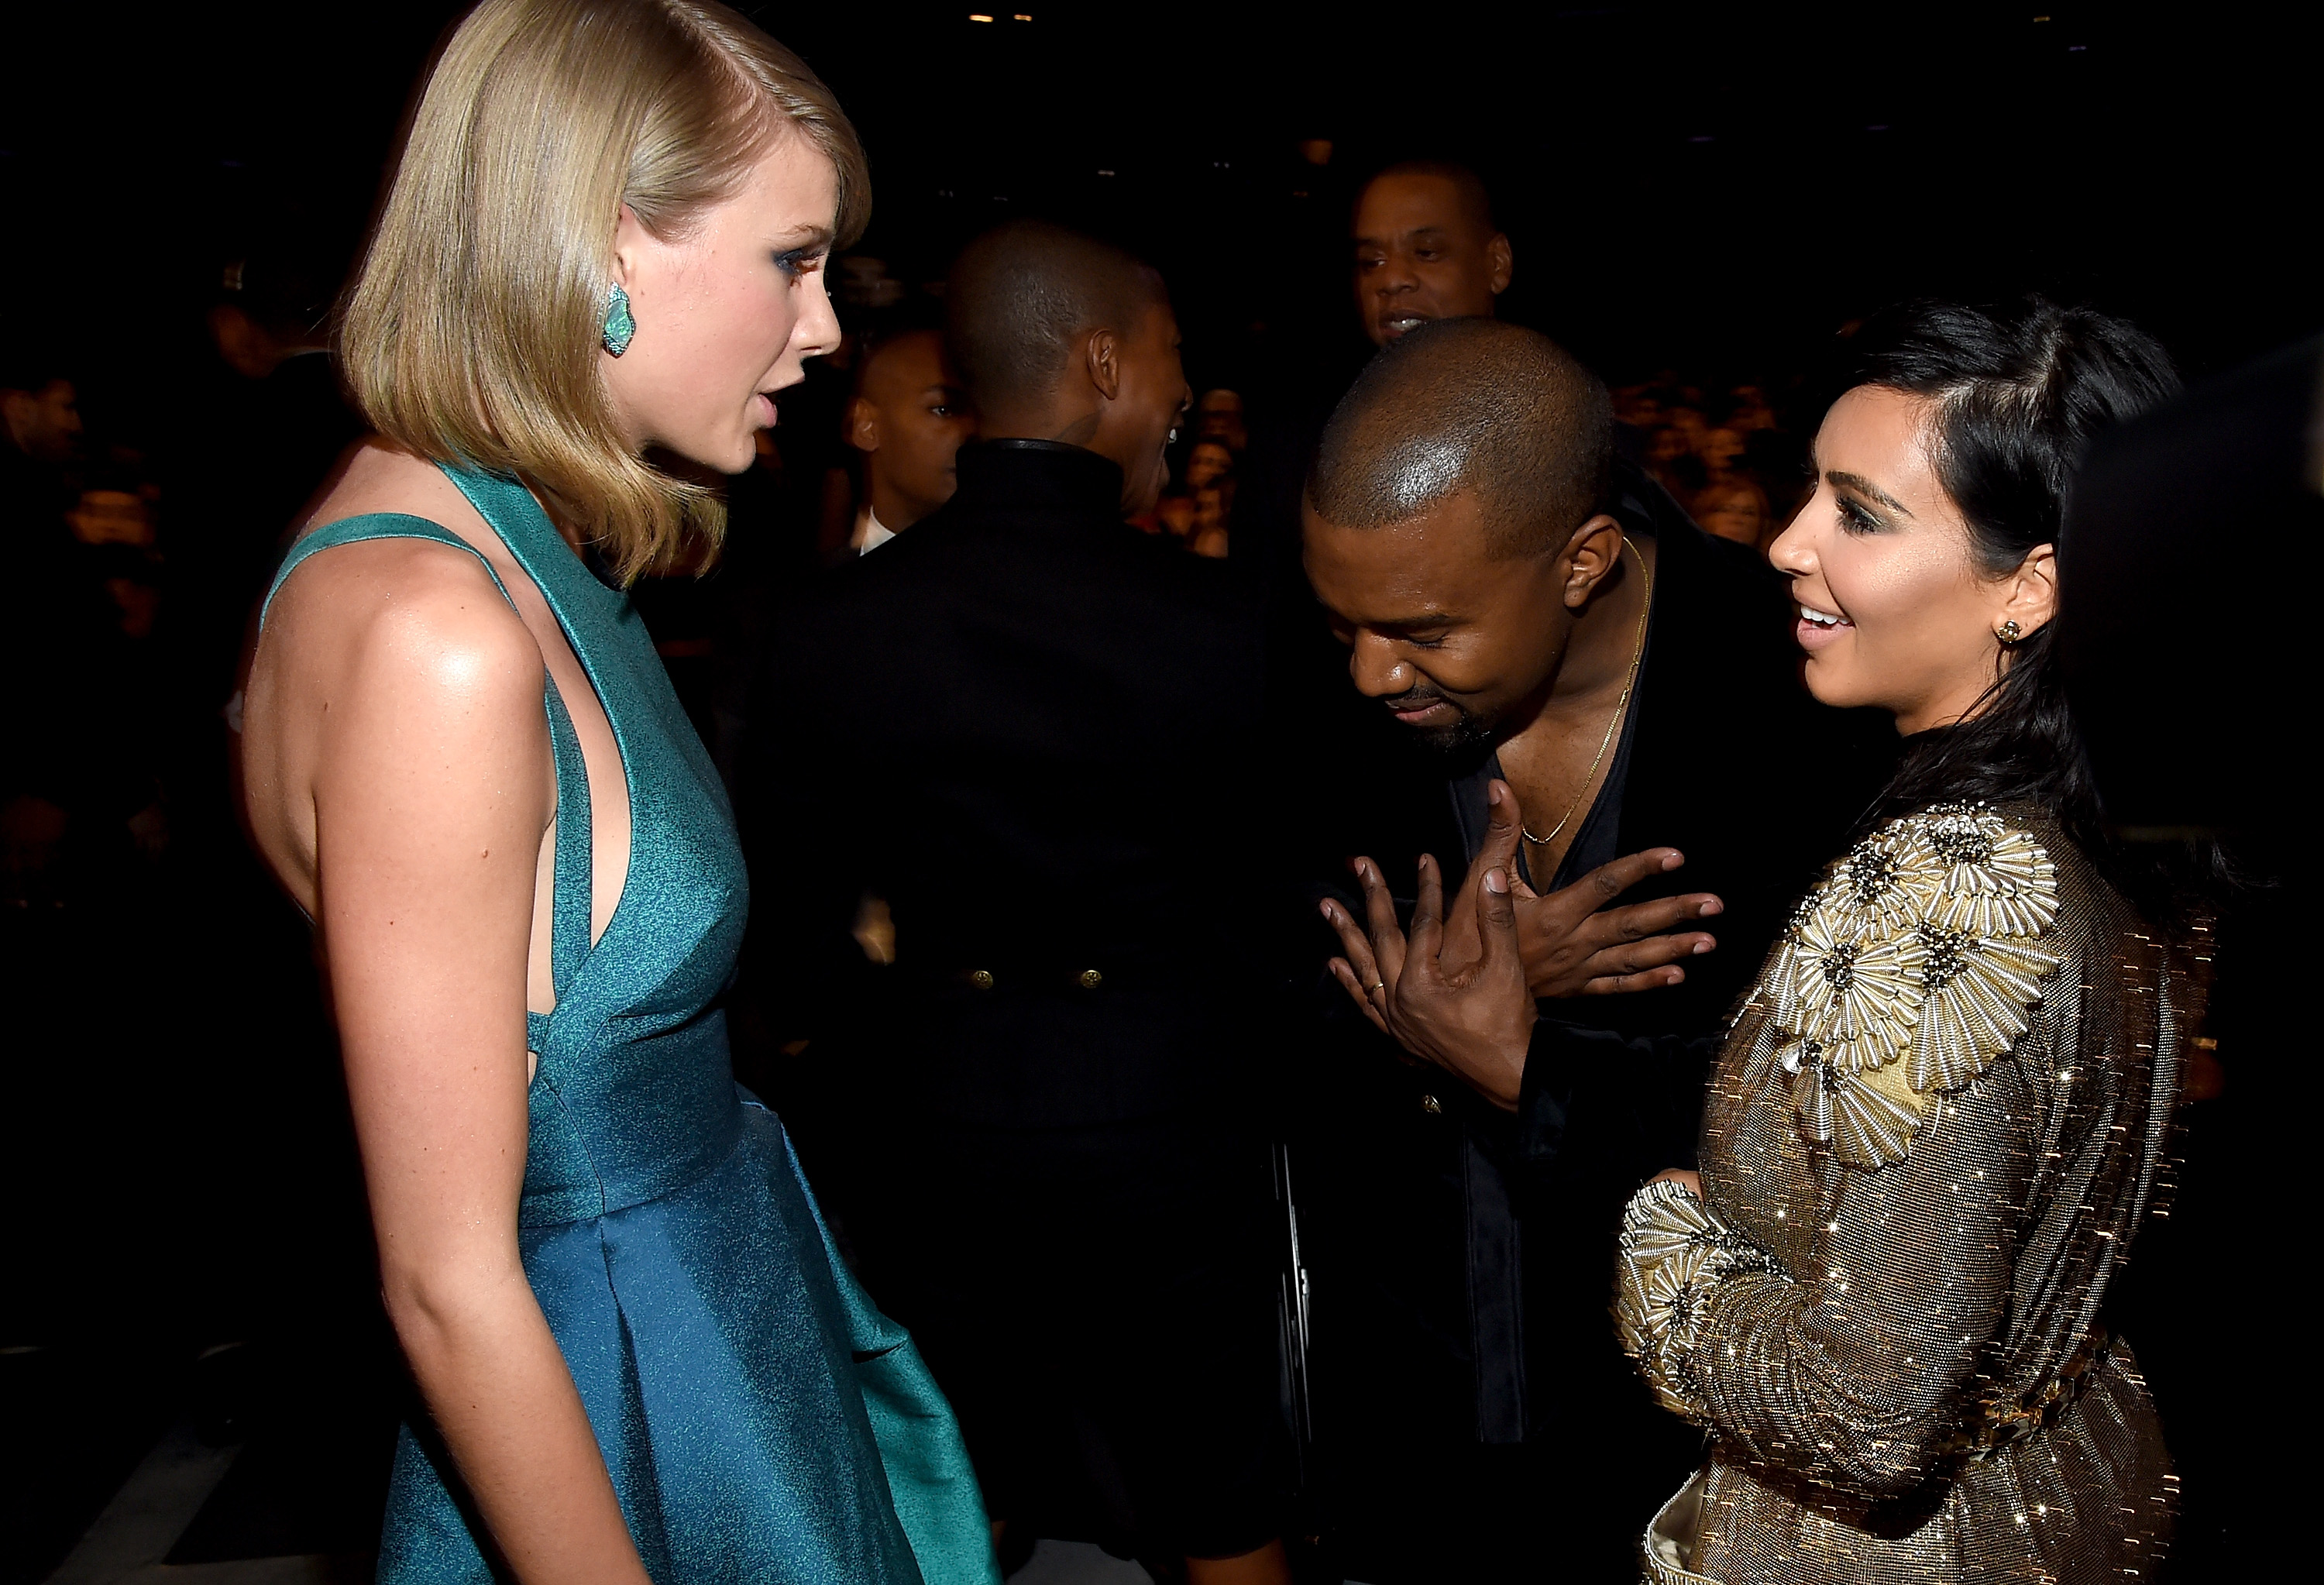 Die Sängerin sprach über ihre Fehde mit dem Reality-Star und ihrem Ex Kanye West